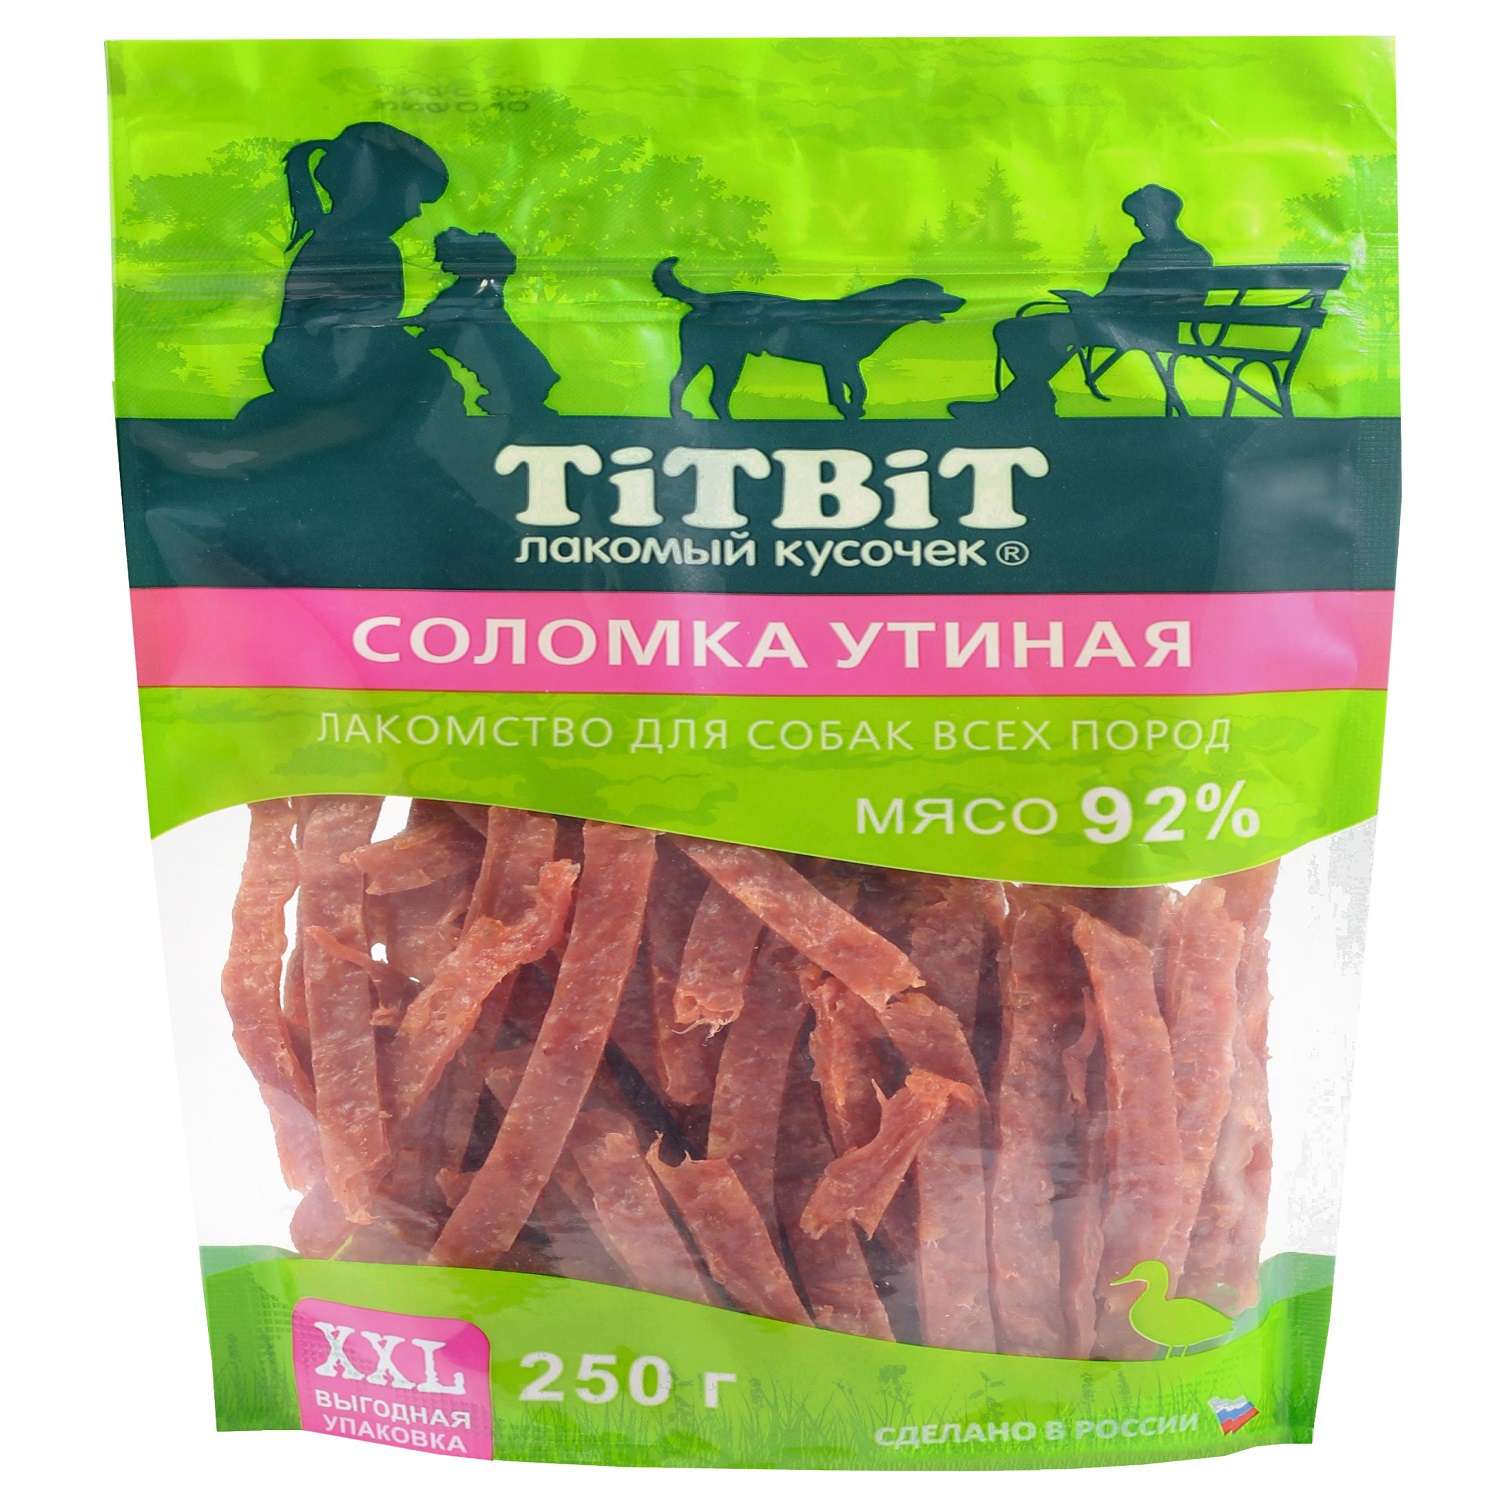 Лакомство для собак Titbit 250г для собак всех пород соломка утиная - фото 1